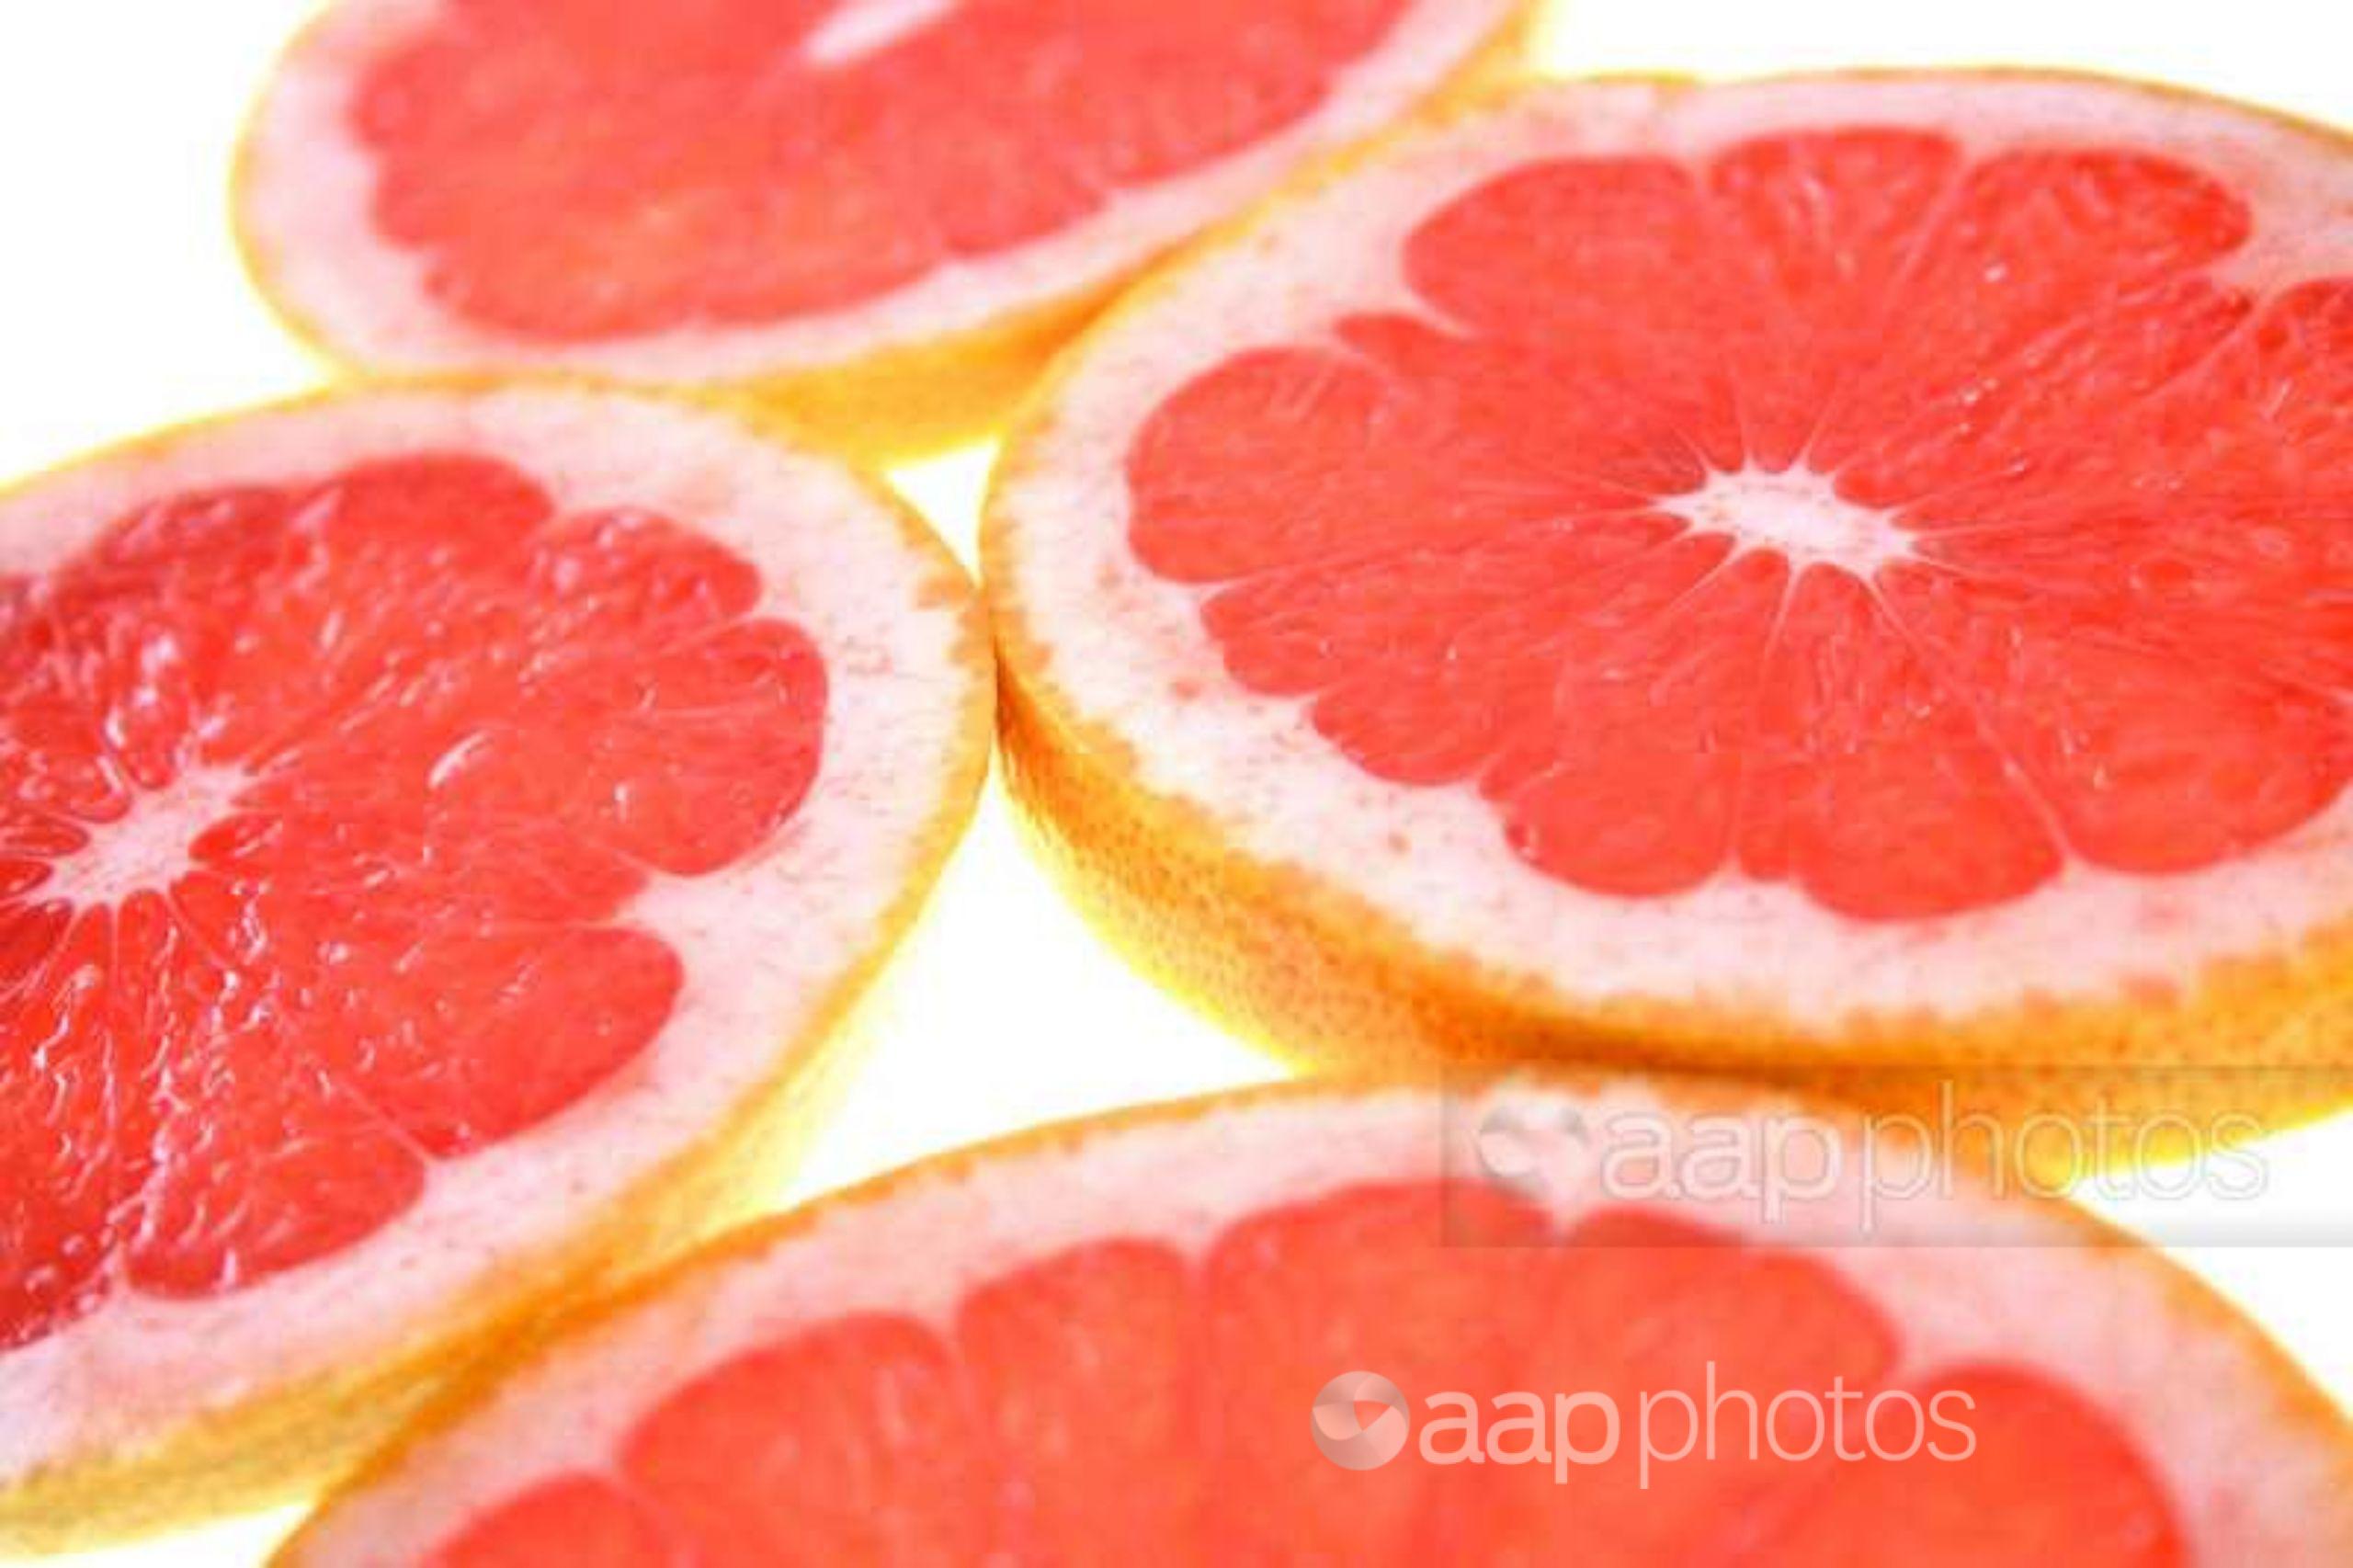 Sliced grapefruits